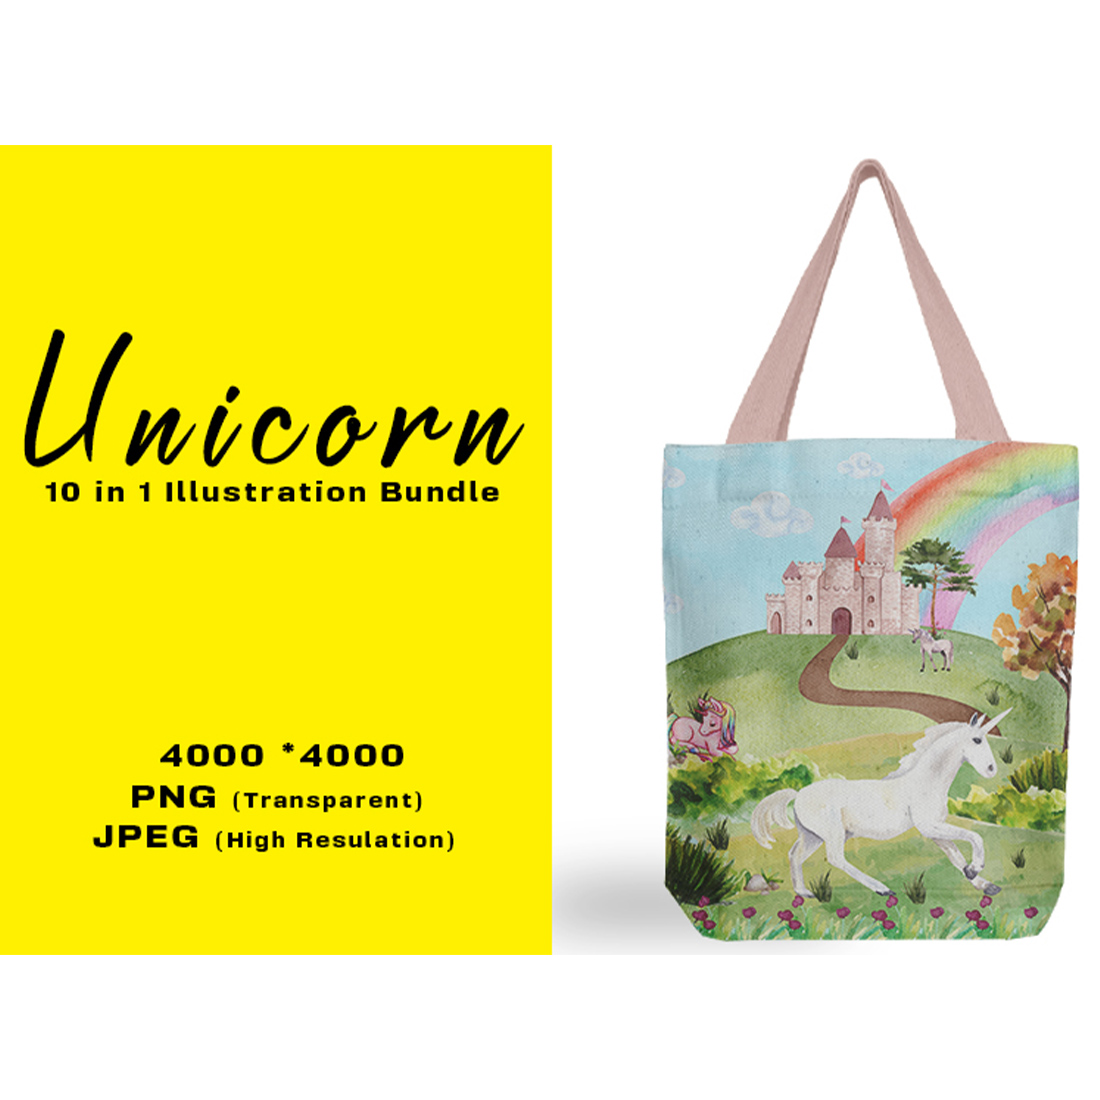 Image of bag with enchanting unicorn print